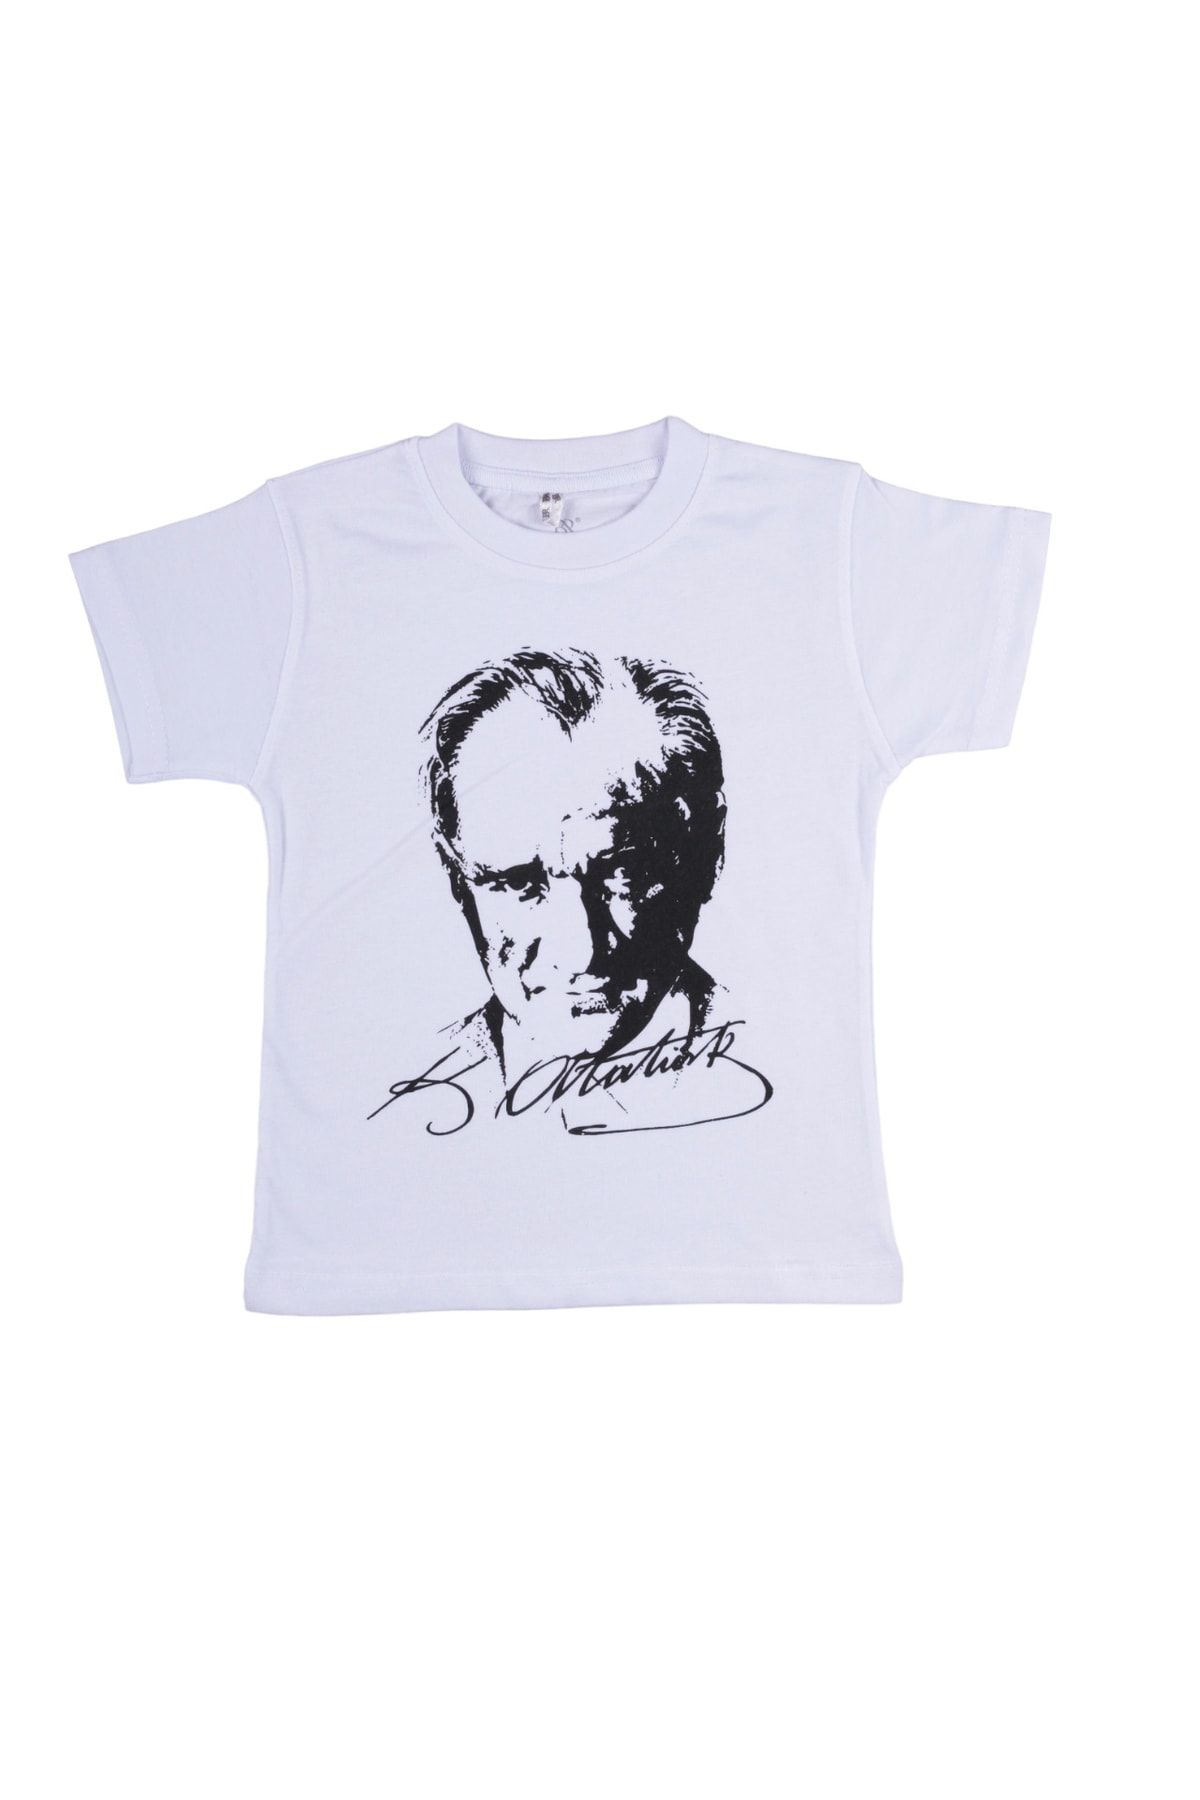 By Cwhr %100 Pamuk Atatürk Baskılı Çocuk Tişört 29 Ekim,23 Nisan Çocuk Beyaz Atatürk Tişörtü